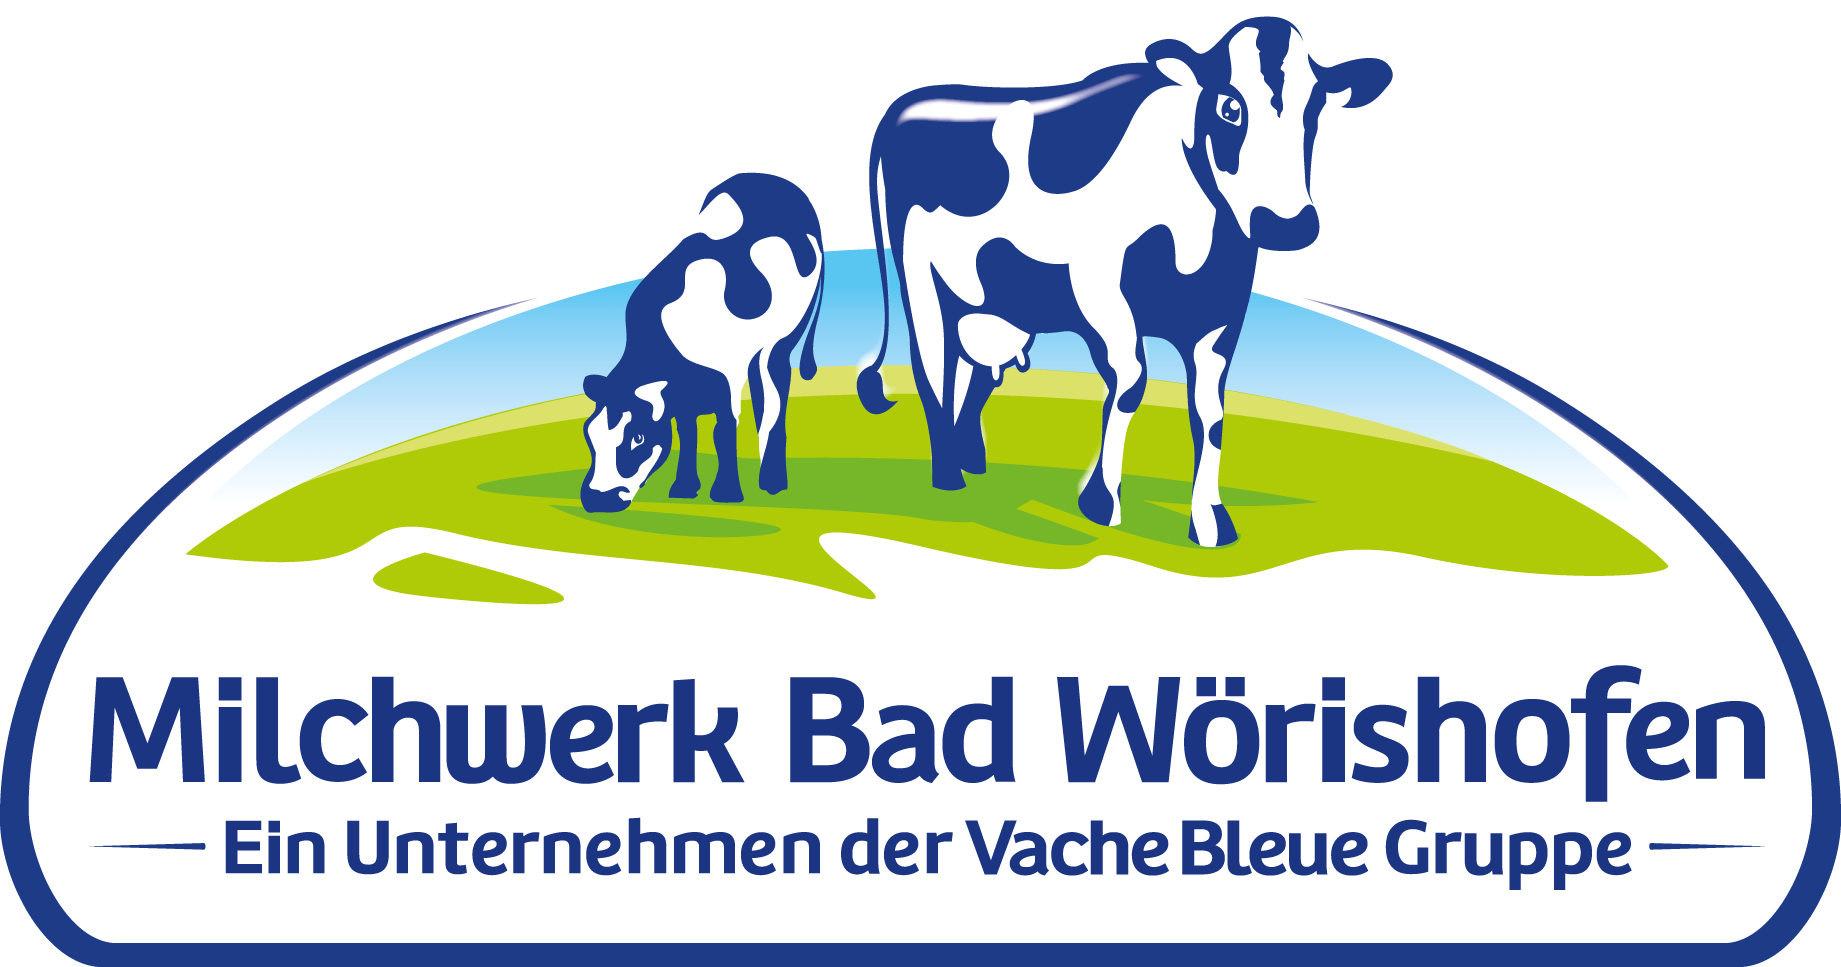 Milchwerk Bad Wörishofen